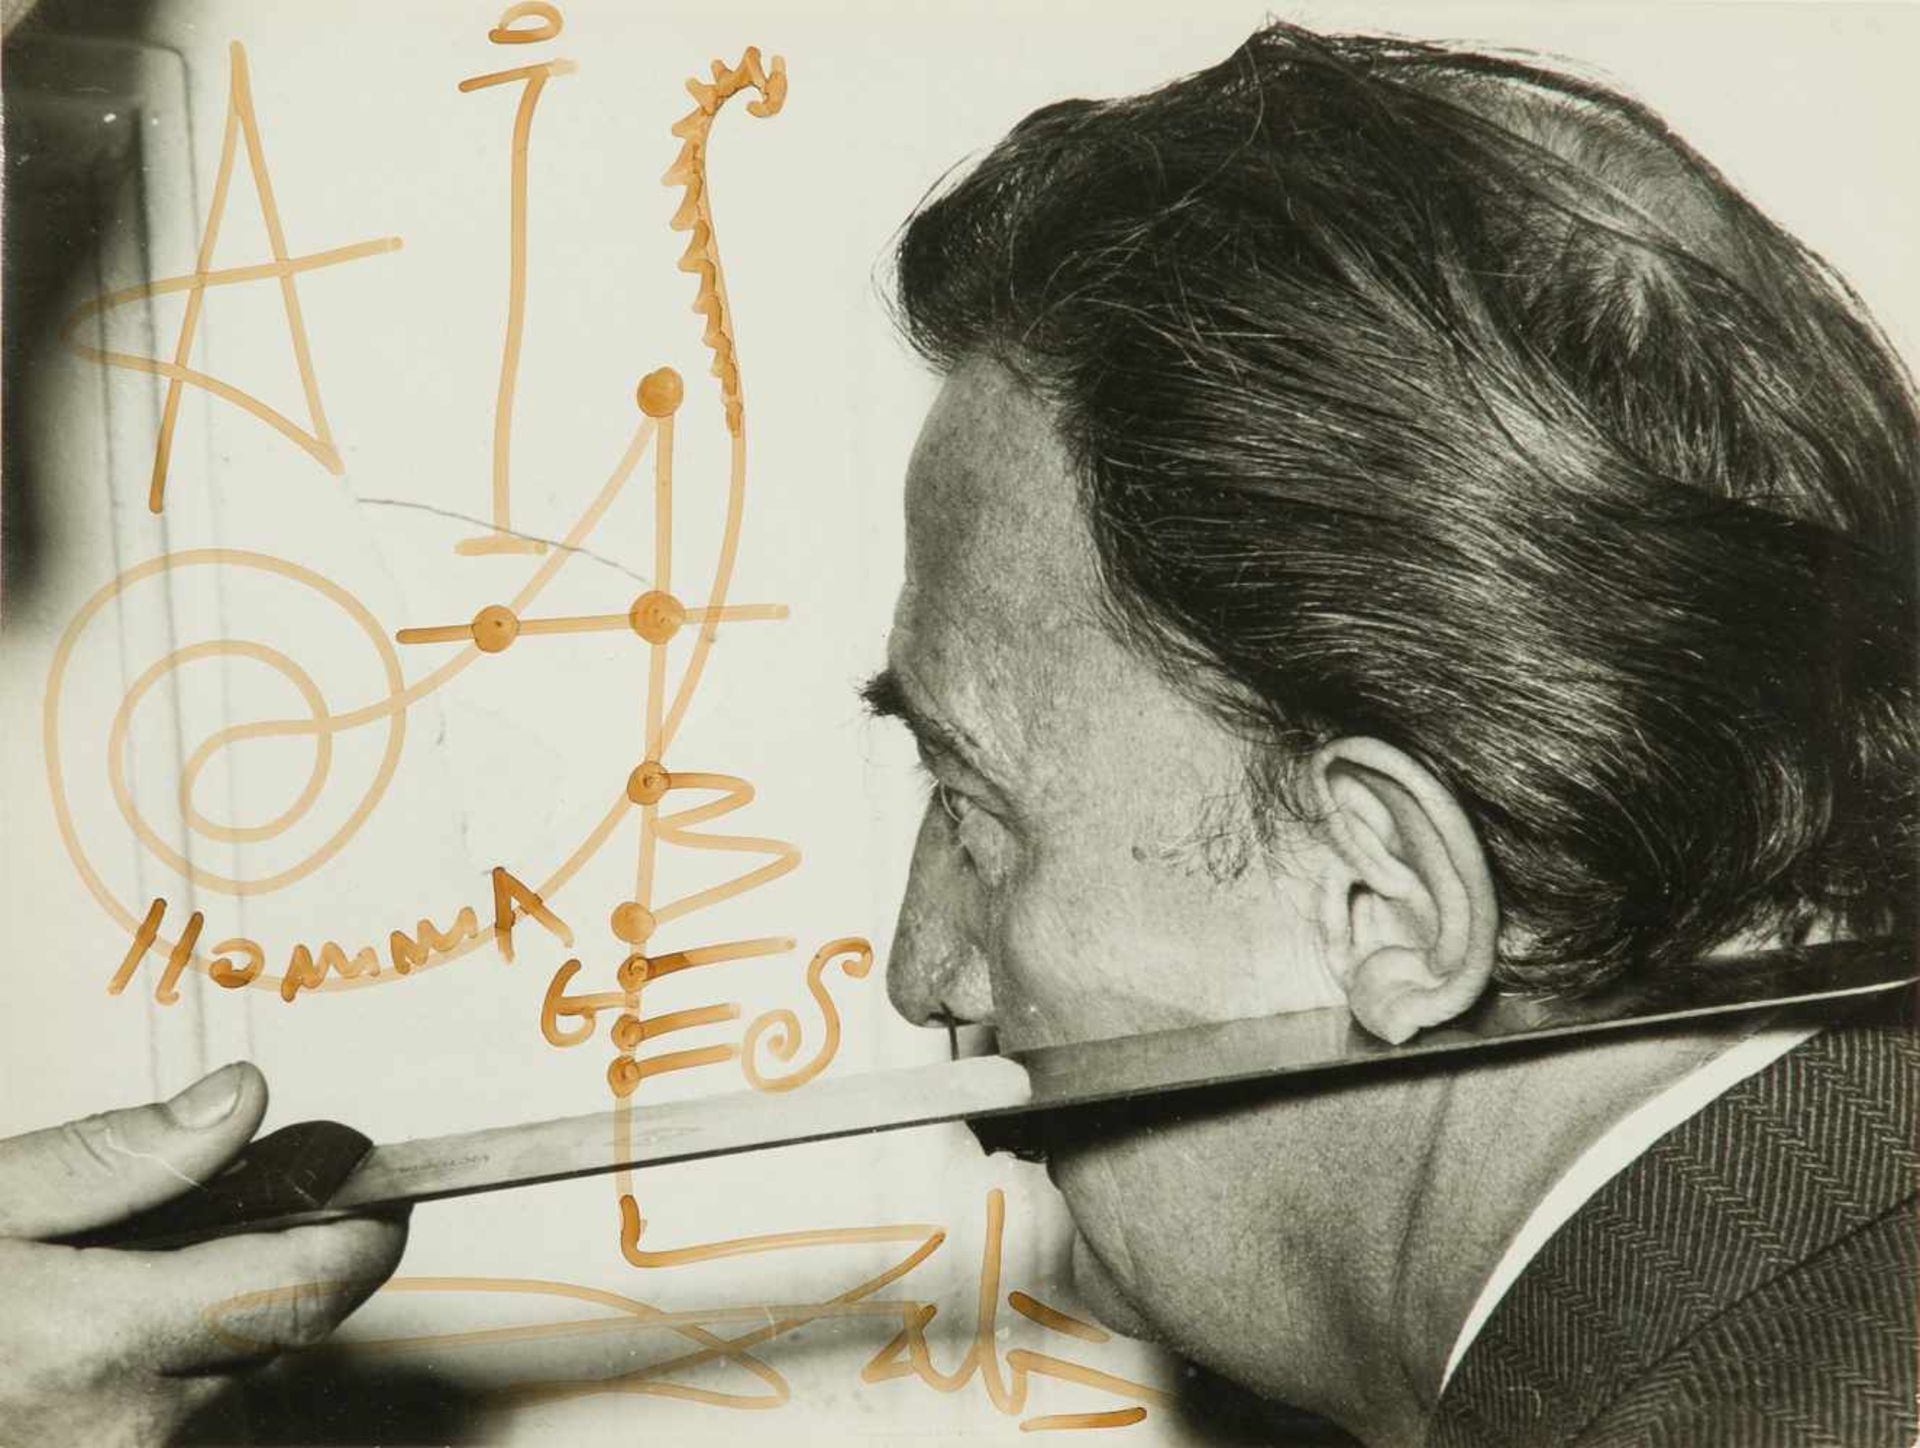 Salvador Dalí (Figueres, 1904 - 1989) Felt-tip pen autograph on a photograph. Signed. 18 x 24 cm.